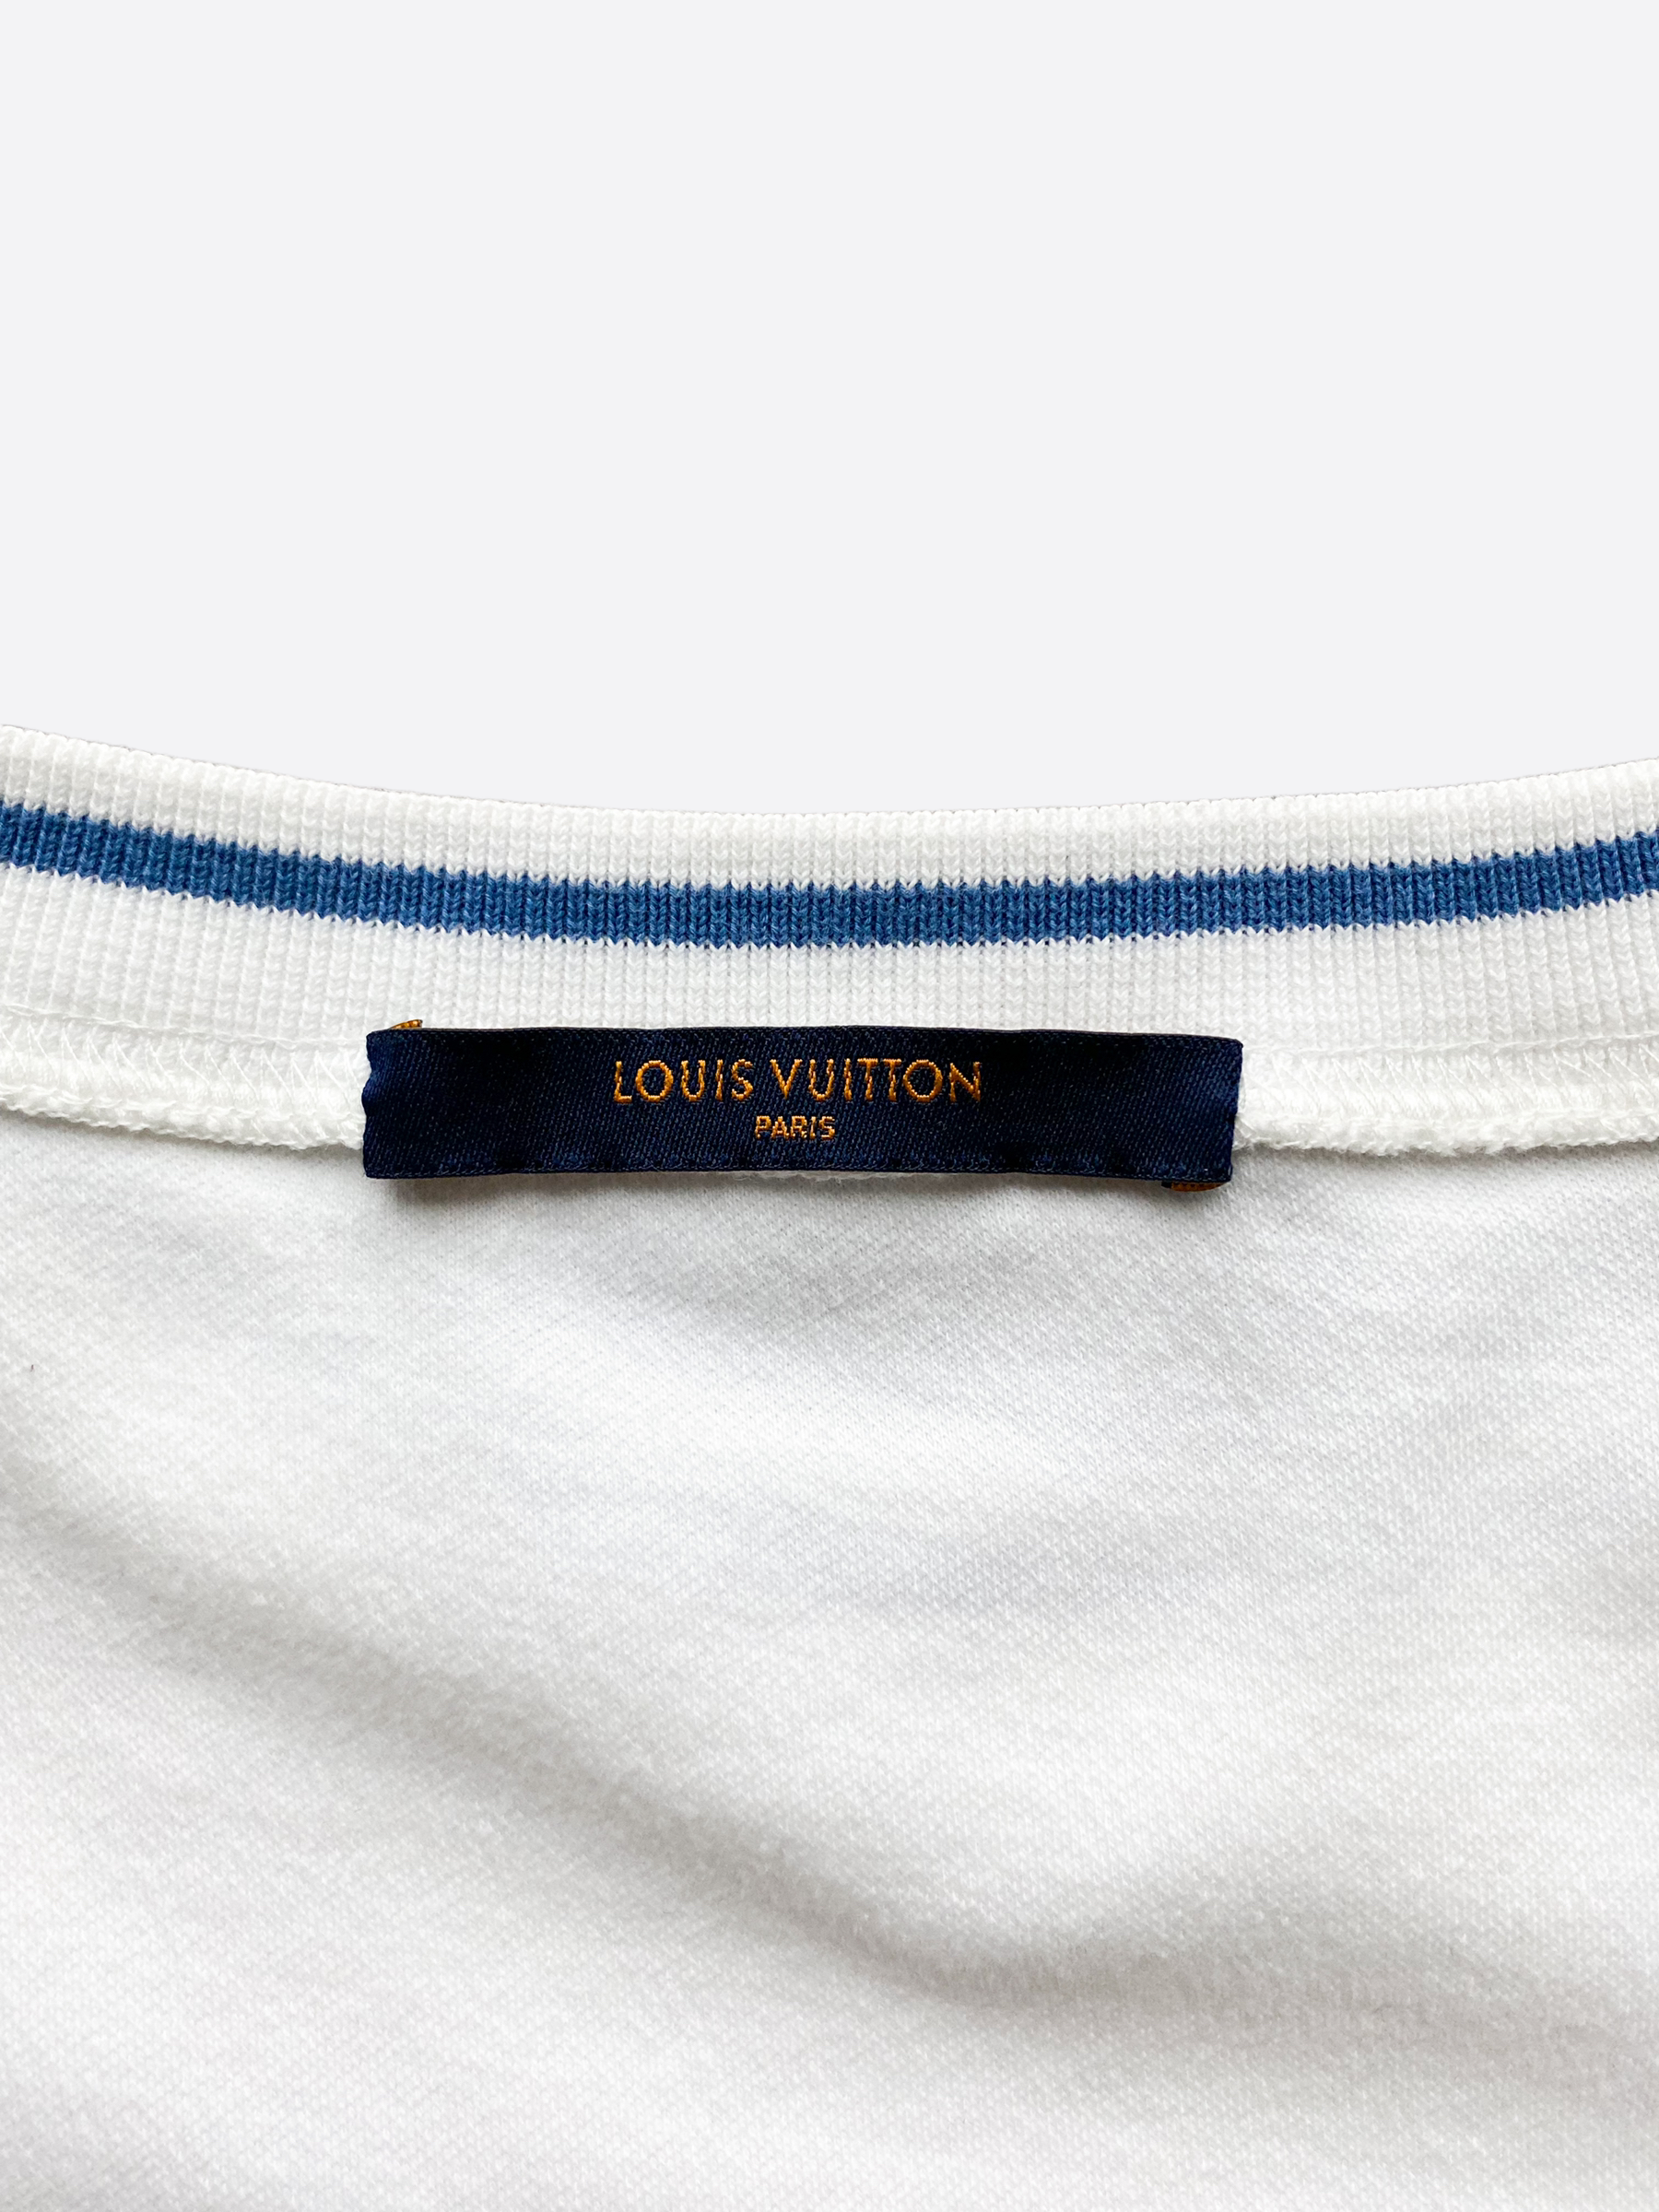 Louis vuitton - T-Shirt - SIZE S - Stripes - Authentic